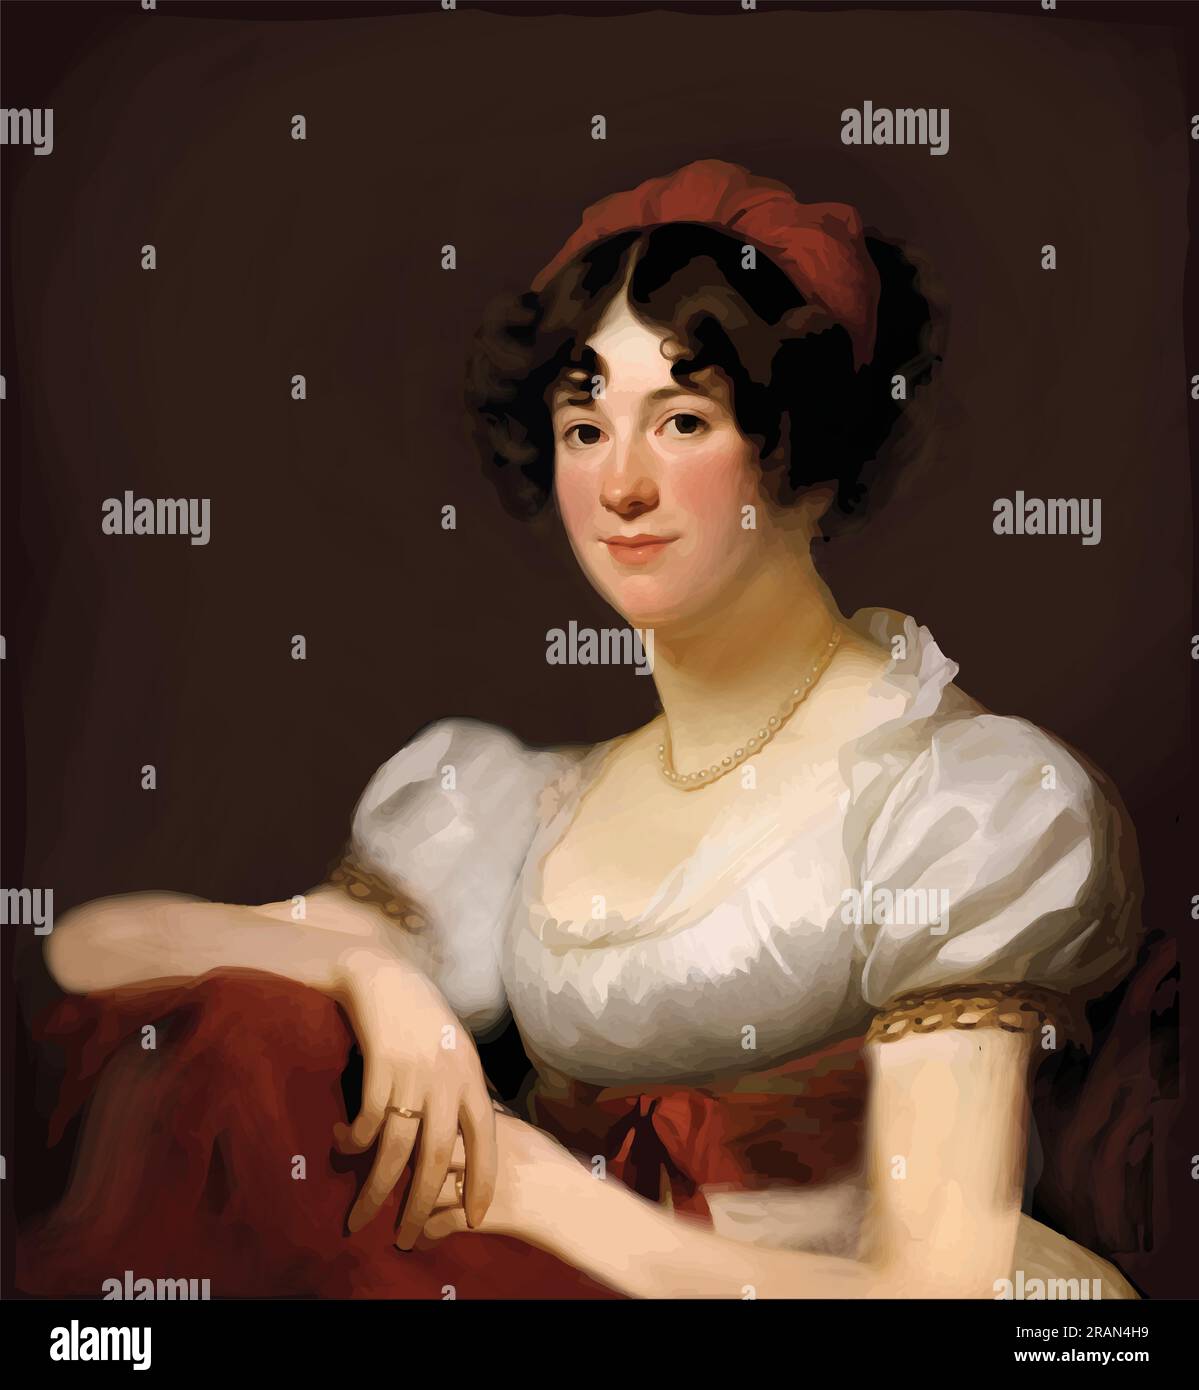 Pittura vettoriale di Dolley Madison (1768-1849), moglie di James Madison, quarto presidente degli Stati Uniti dal 1809 al 1817. Illustrazione Vettoriale